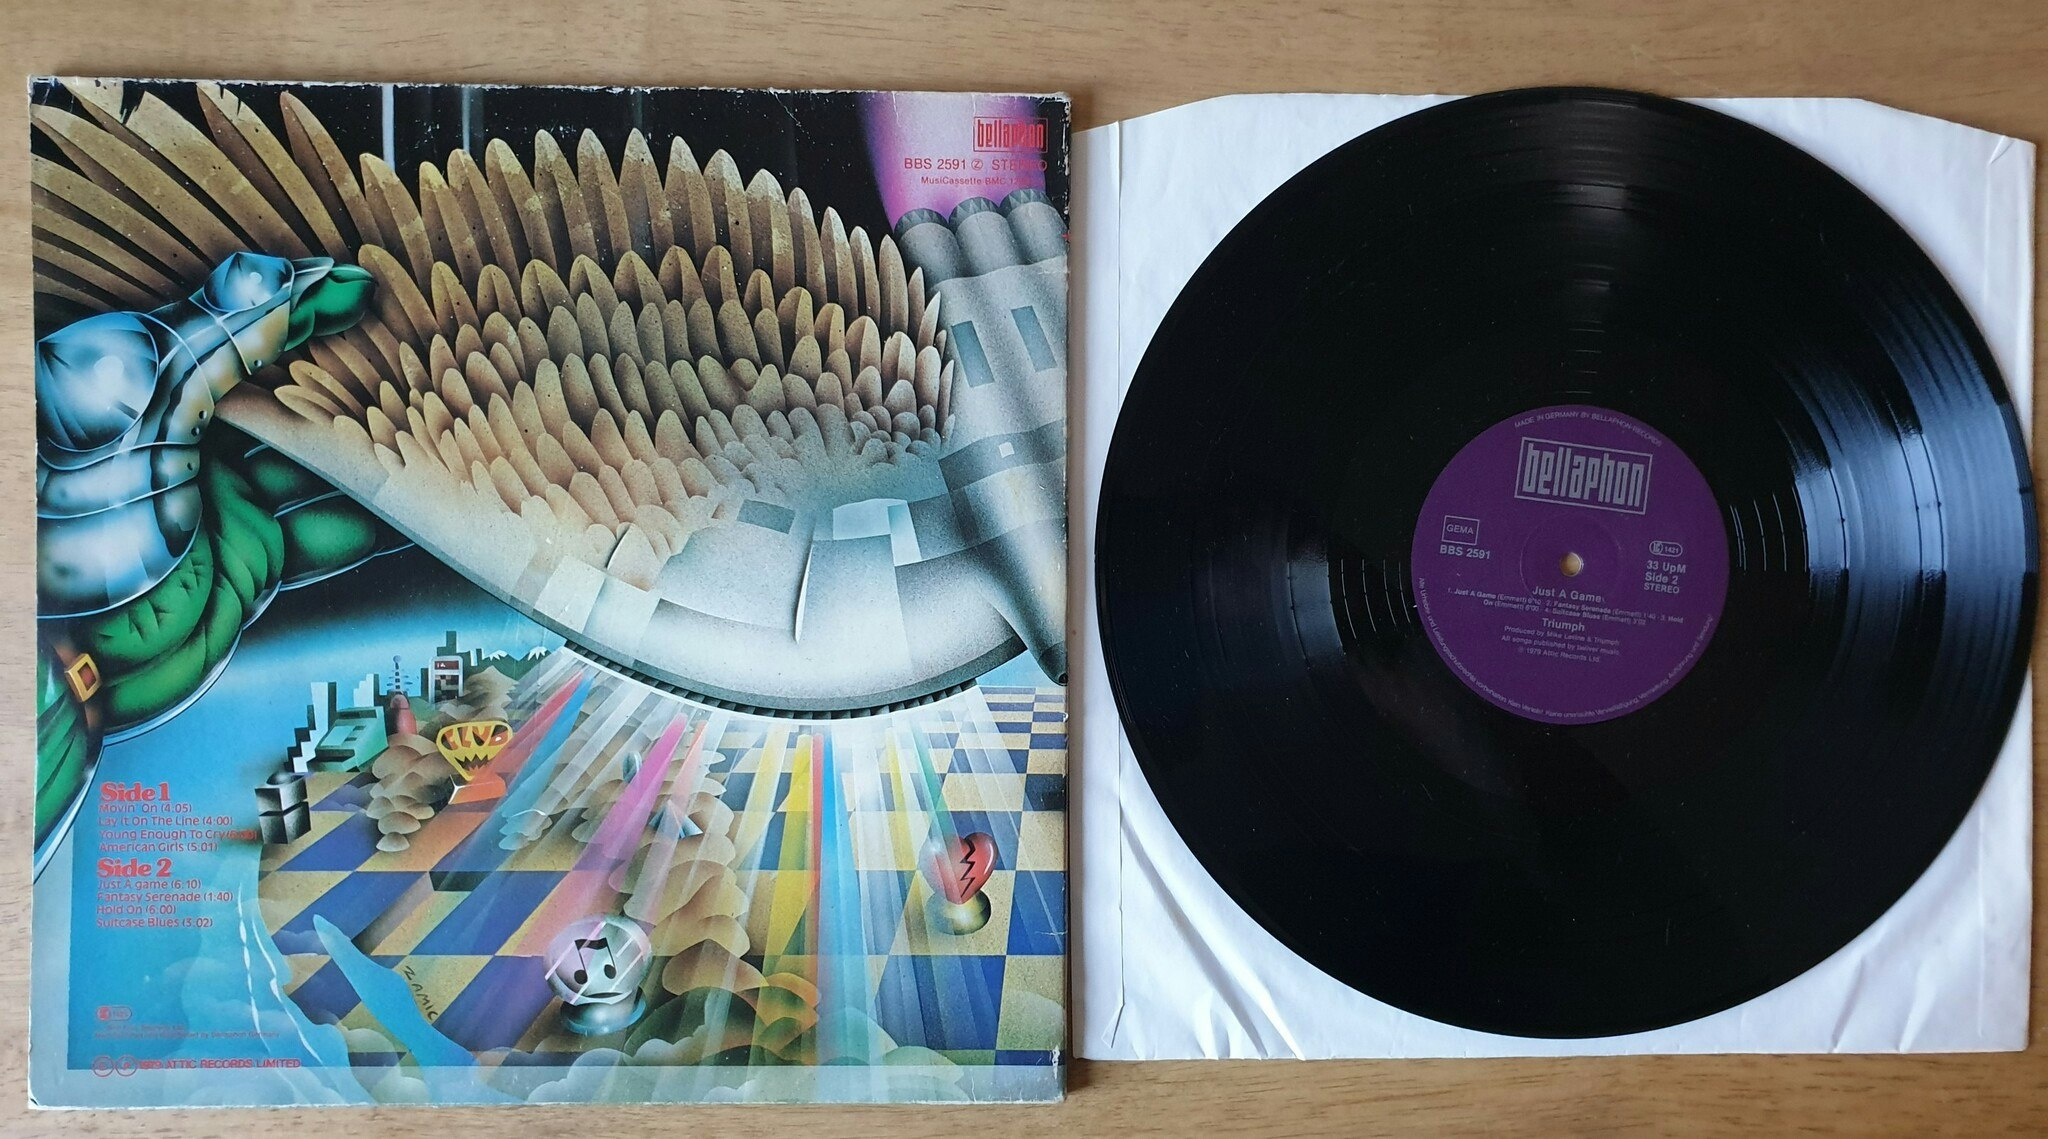 Triumph, Just a game. Vinyl LP